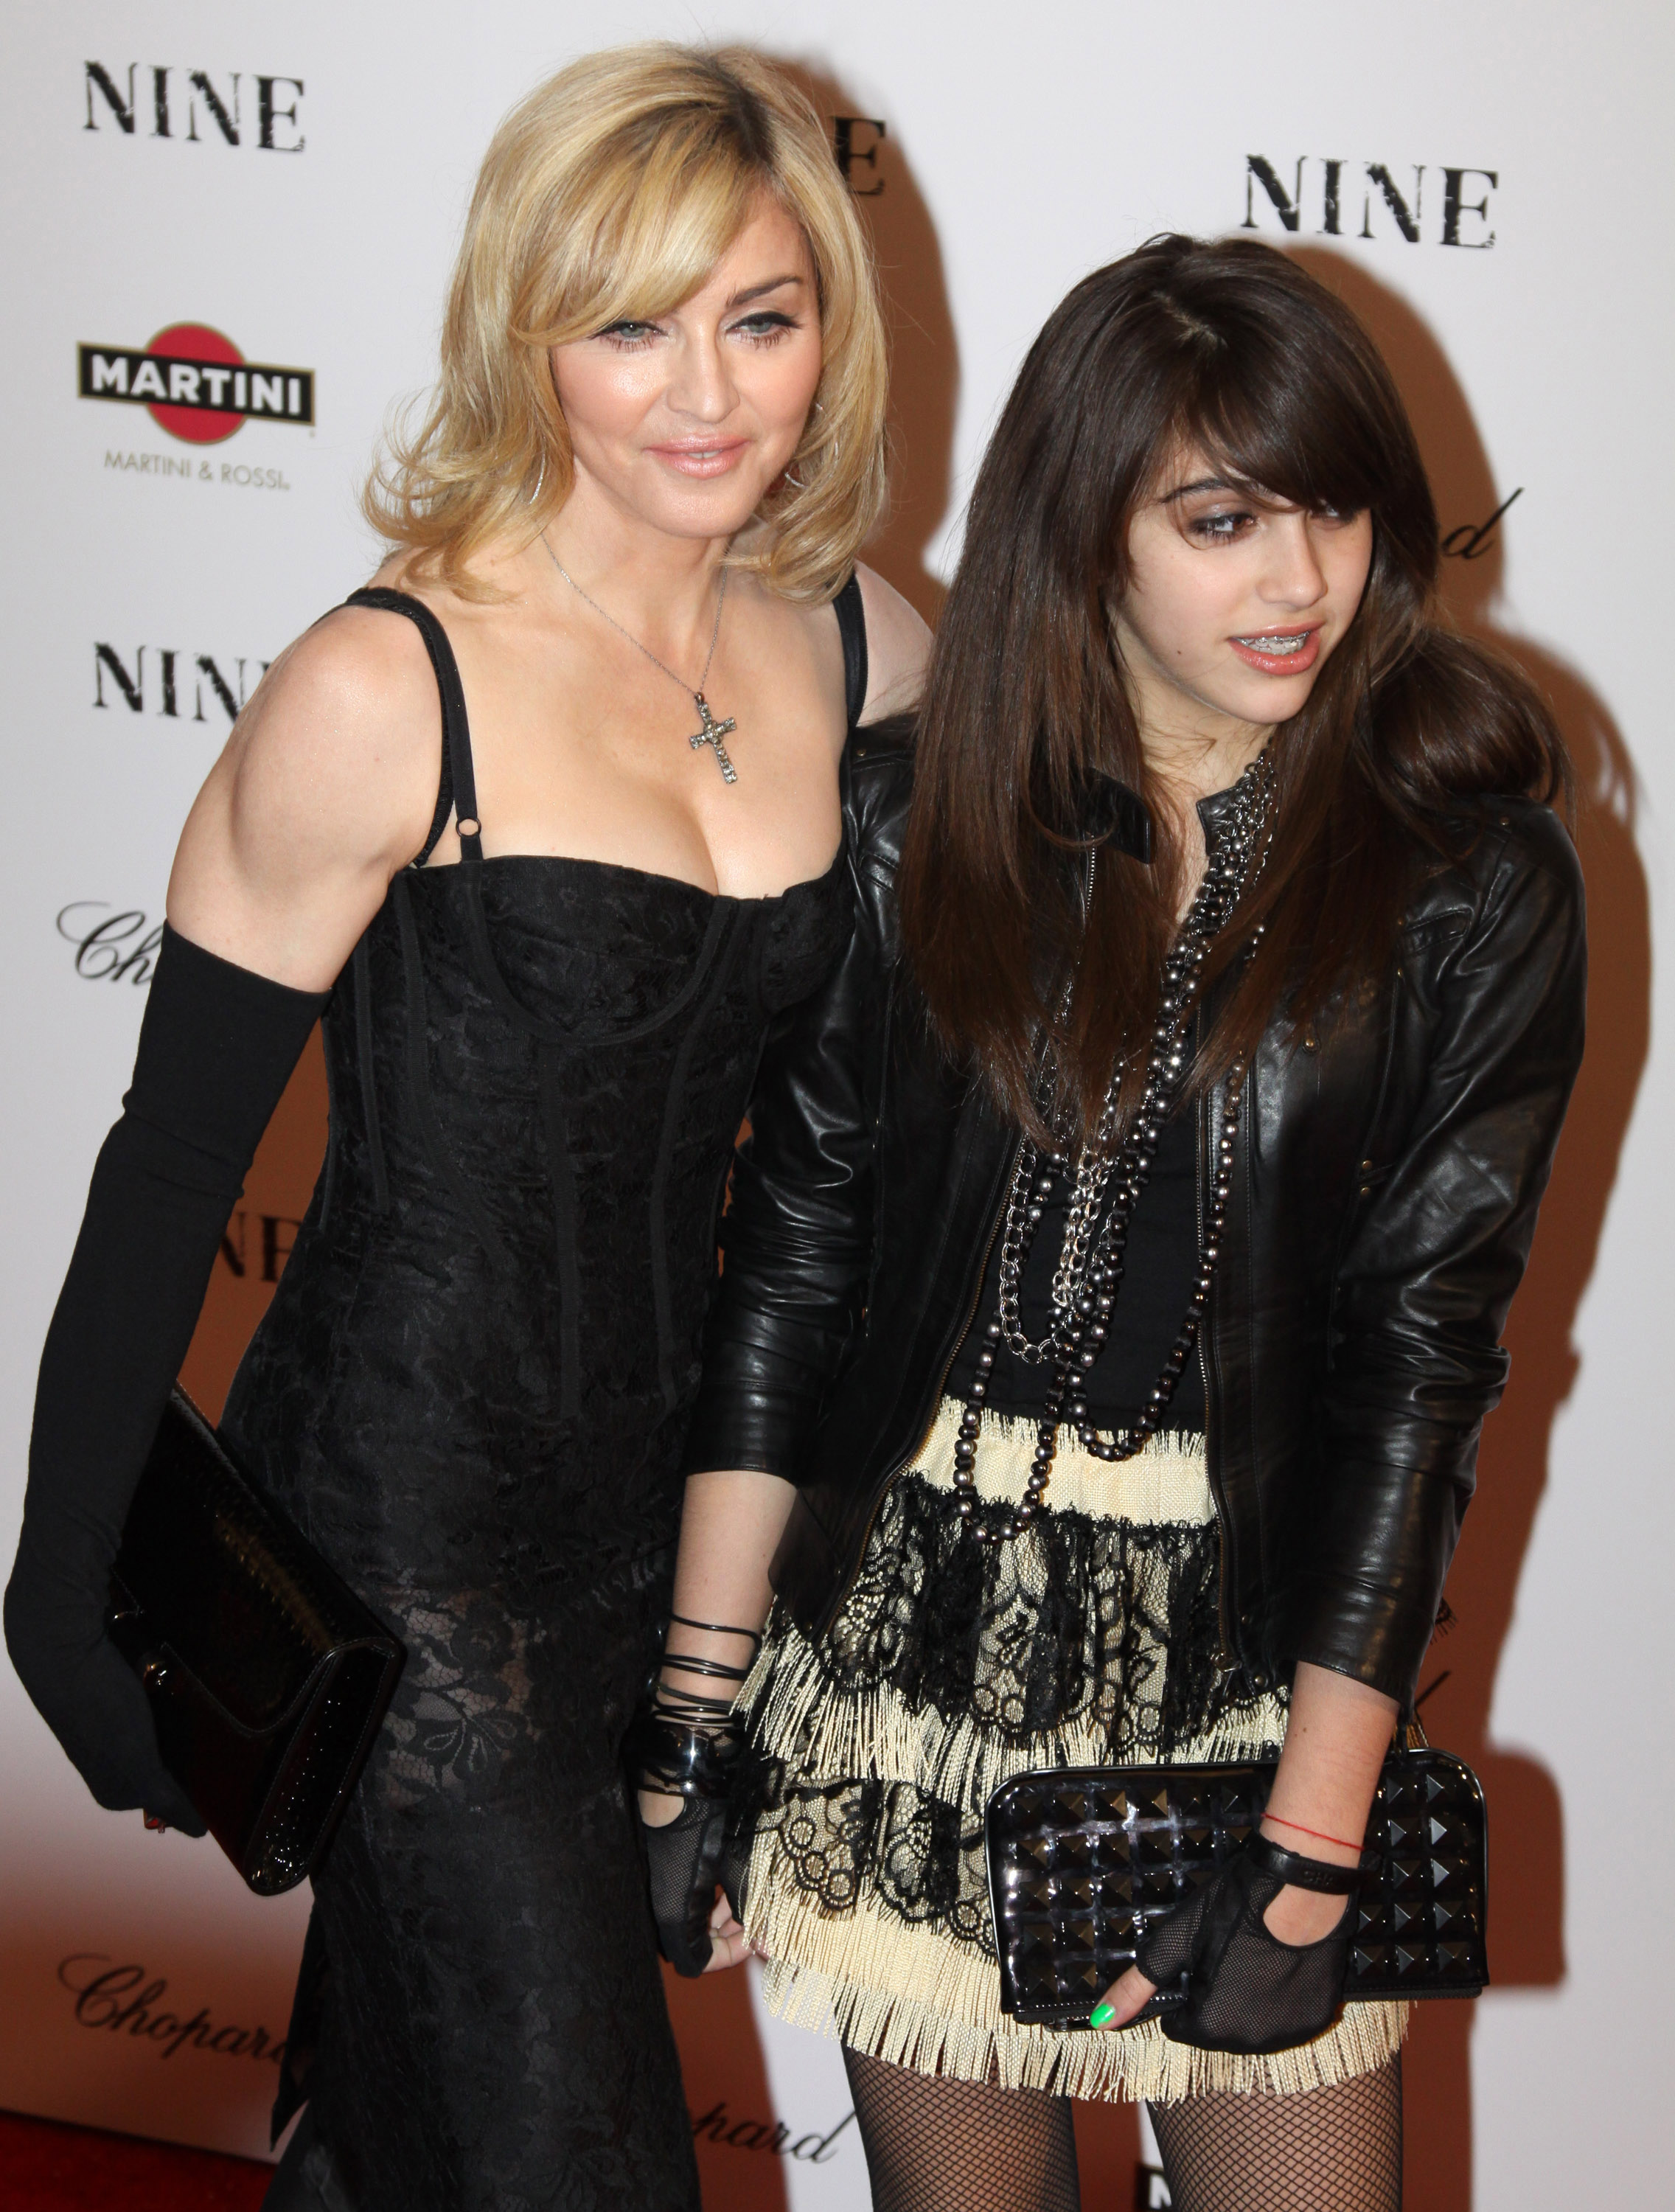 Madonna et sa fille Lourdes "Lola" Leon assistent à la première de "Nine" le 15 décembre 2009 à New York | Source : Getty Images